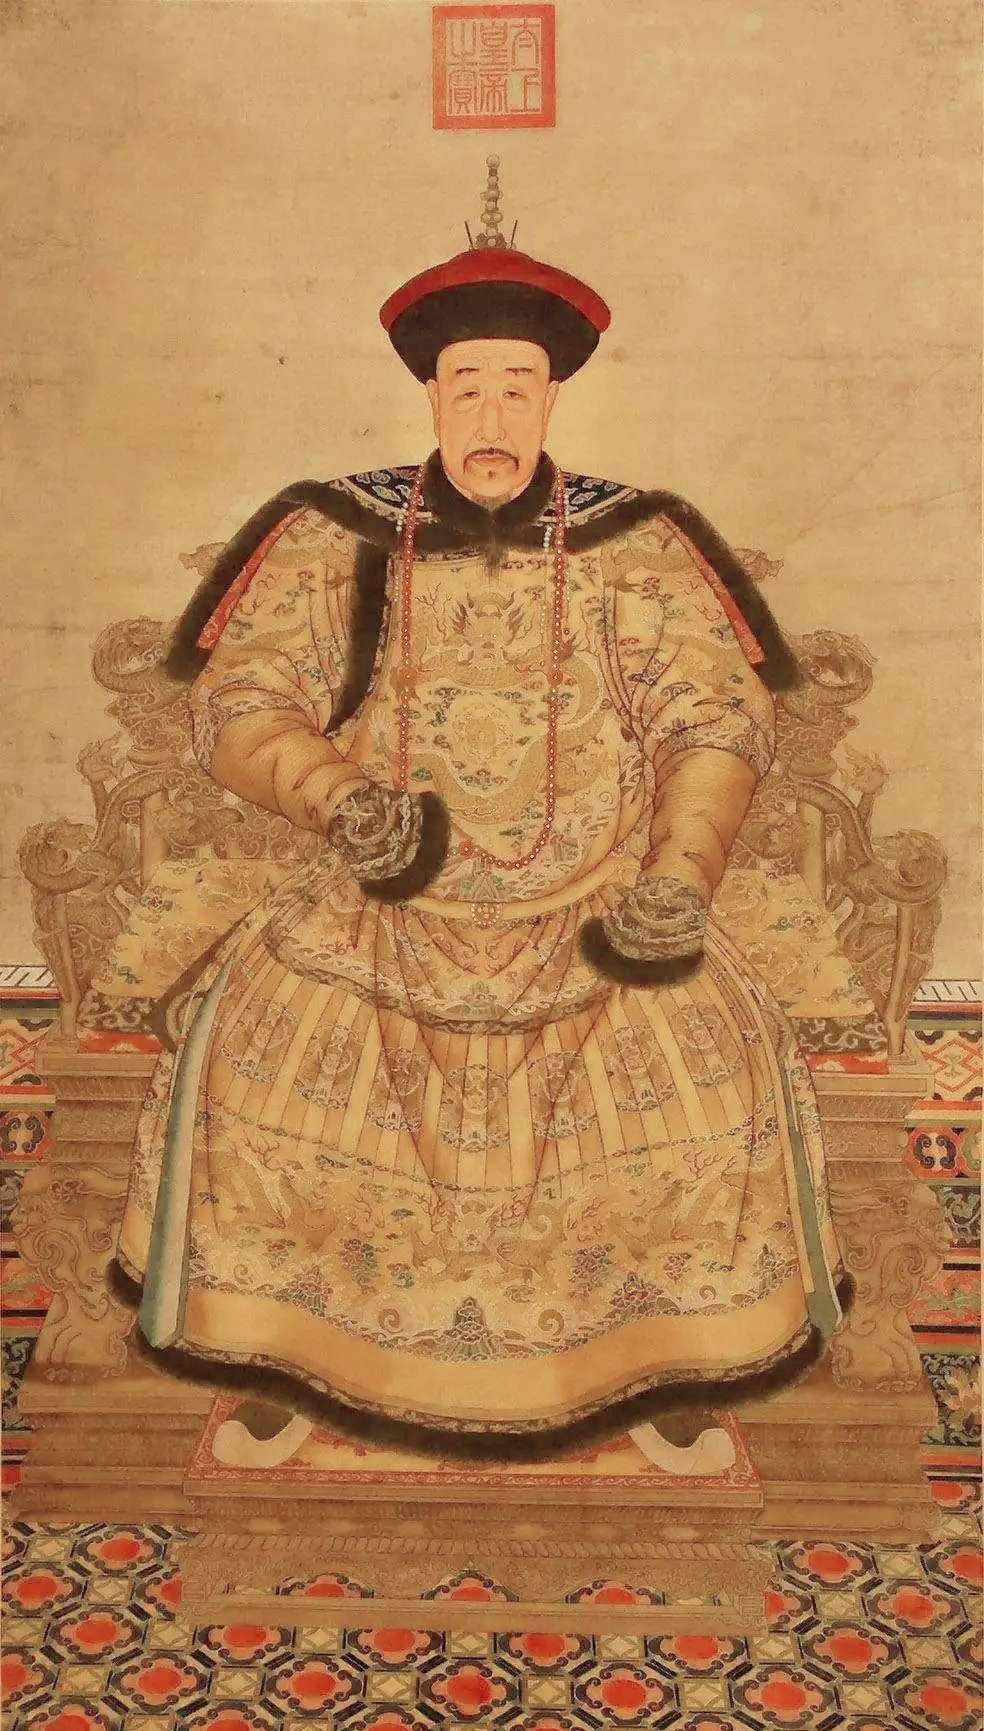 雍正皇帝死因流传2种说法,1个是过劳,还有1个是啥?